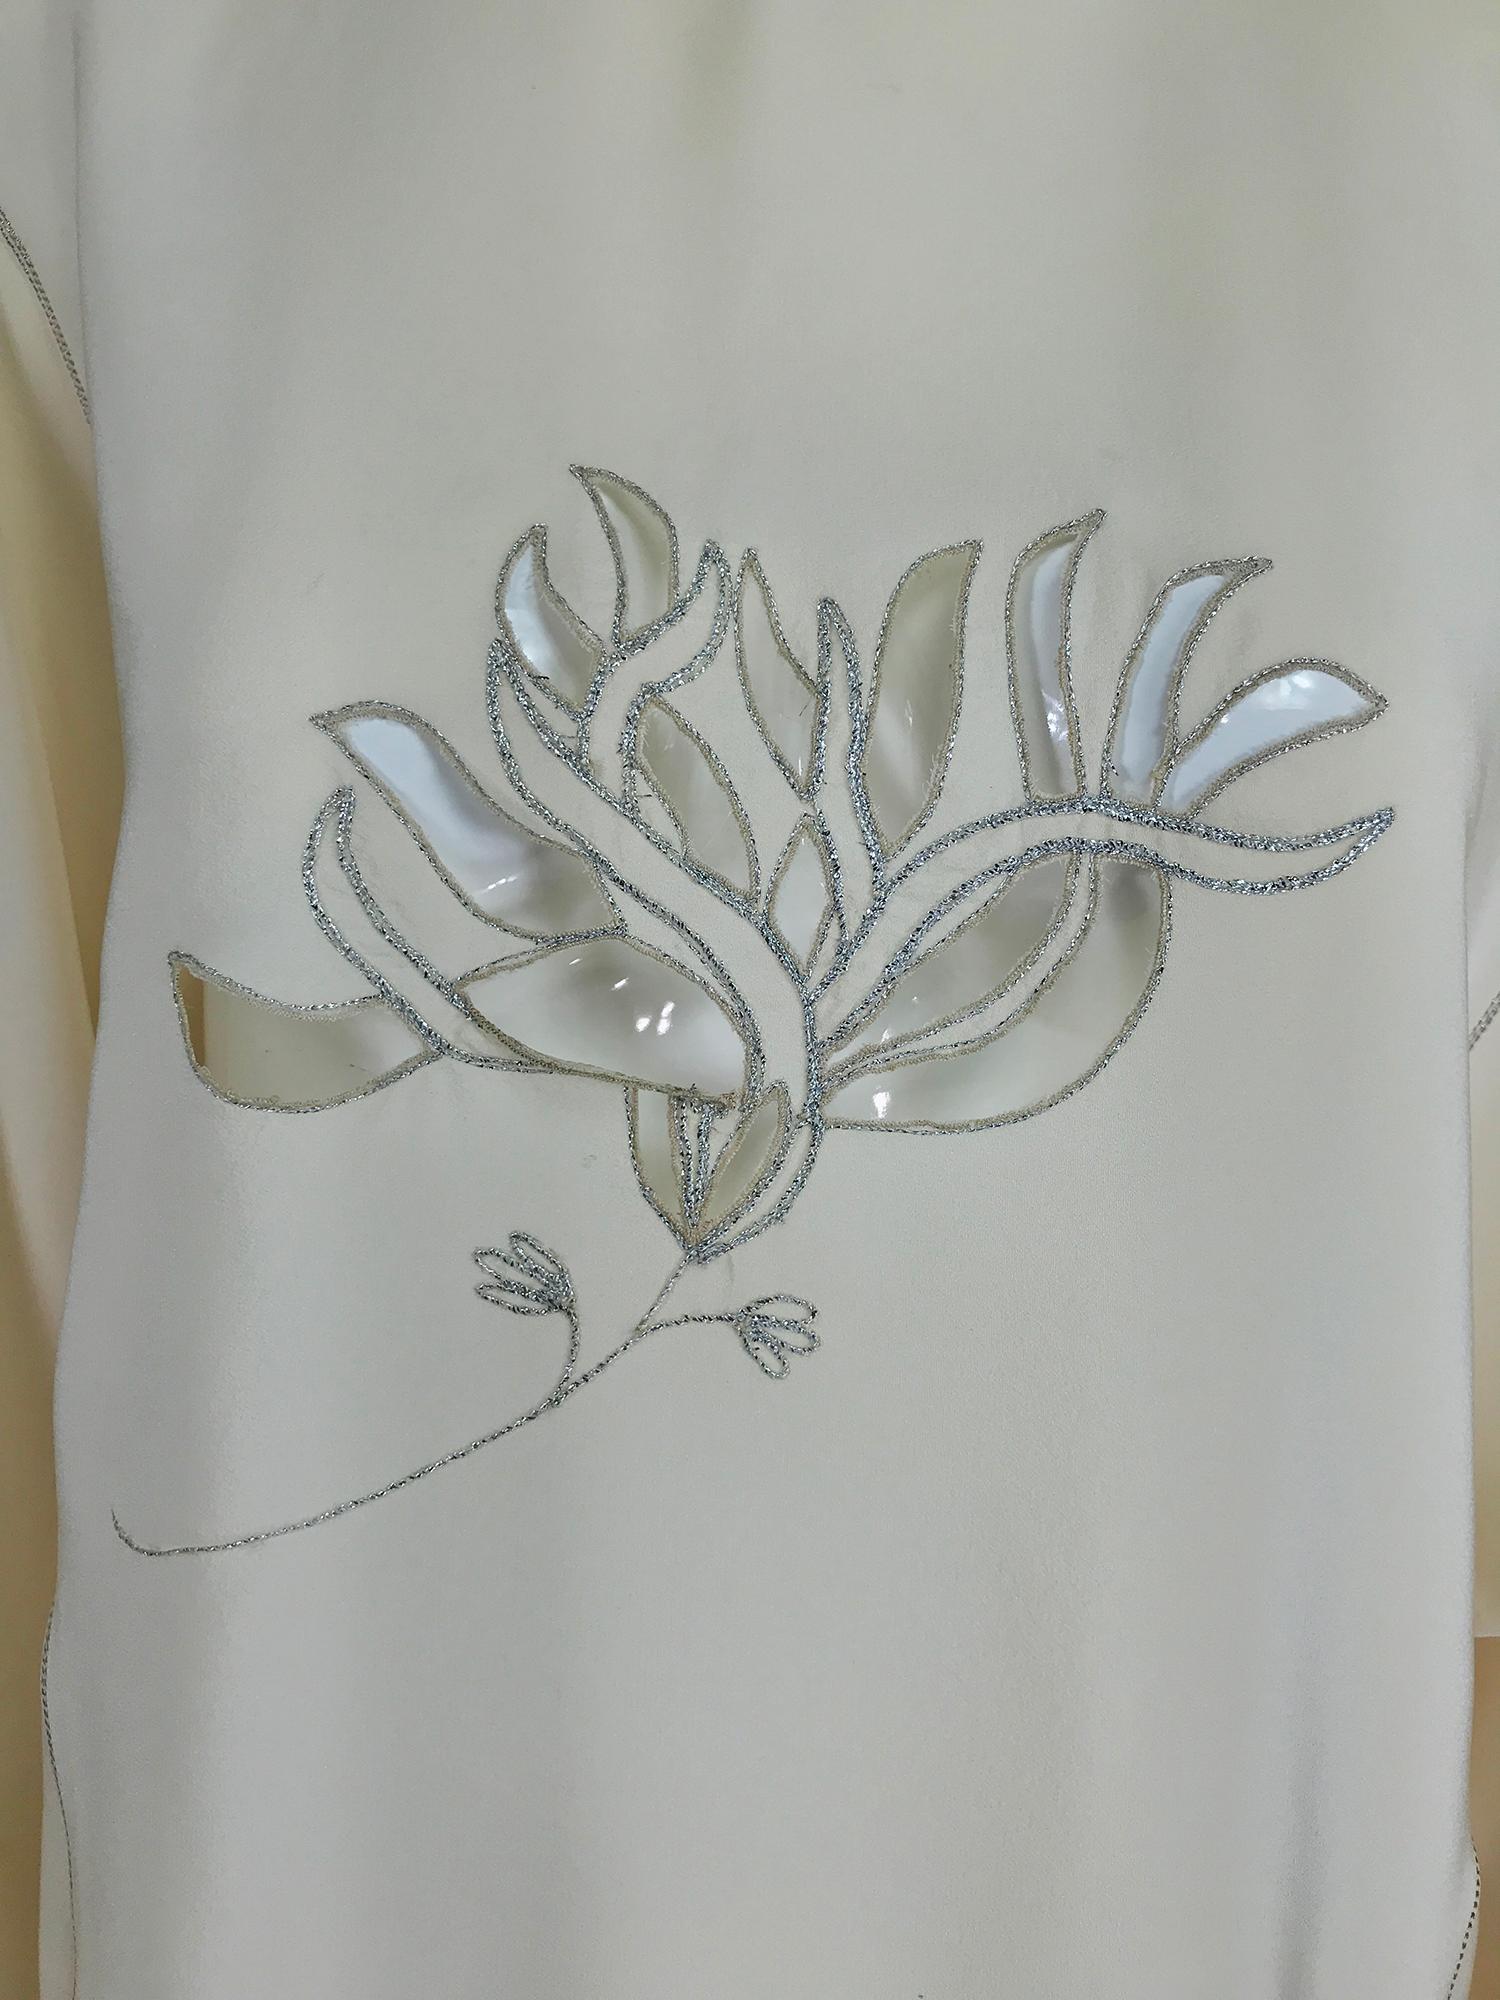 Vintage Bernard Perris, soie crème avec fil métallique argenté peek a boo, blouse à fleurs sur le devant des années 1980. Crêpe de soie légère avec surpiqûres métalliques argentées, la blouse a un col montant avec un V en haut, il y a 2 boucles